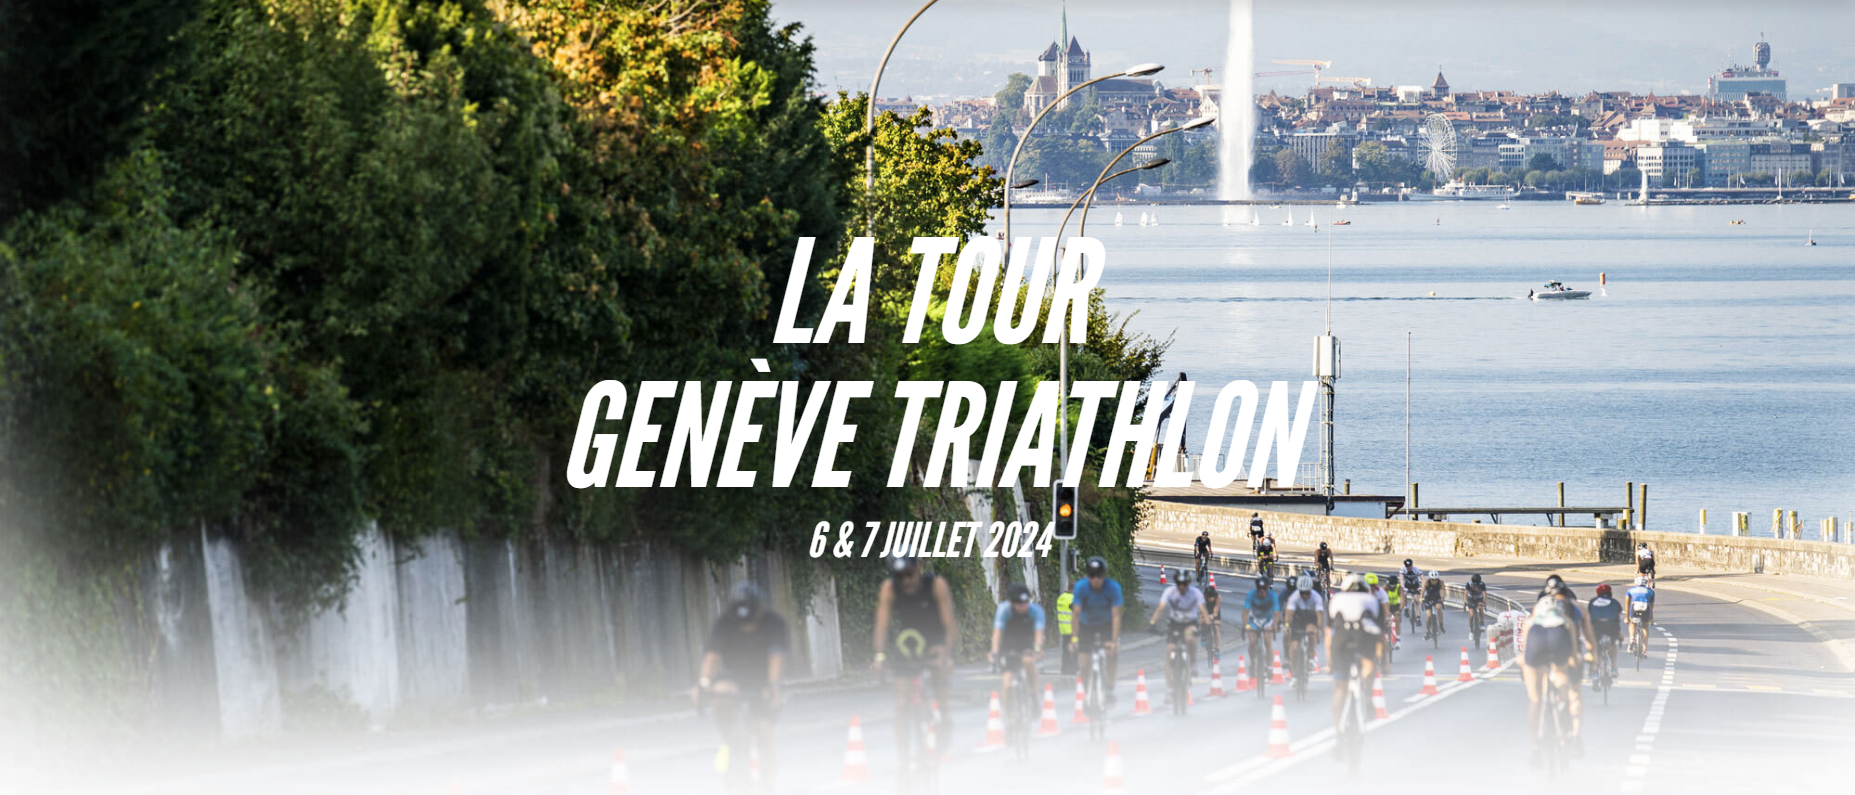 La Tour Genève Triathlon 2023